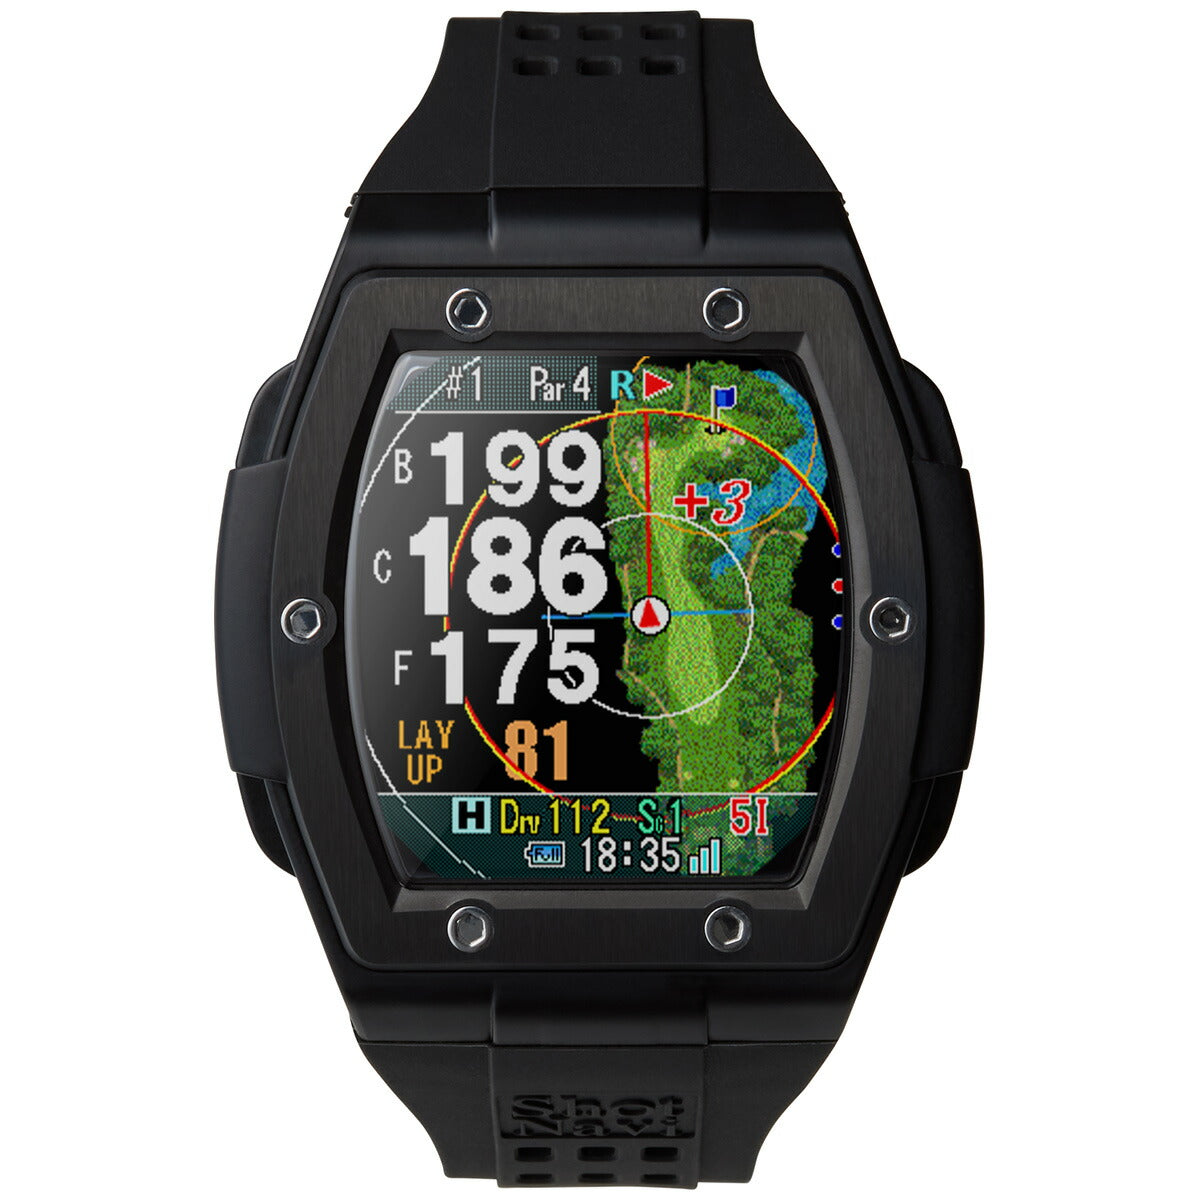 ショットナビ Shot Navi Crest2 クレスト2 腕時計型 GPS ゴルフナビ 距離測定器 距離計測器 ブラック